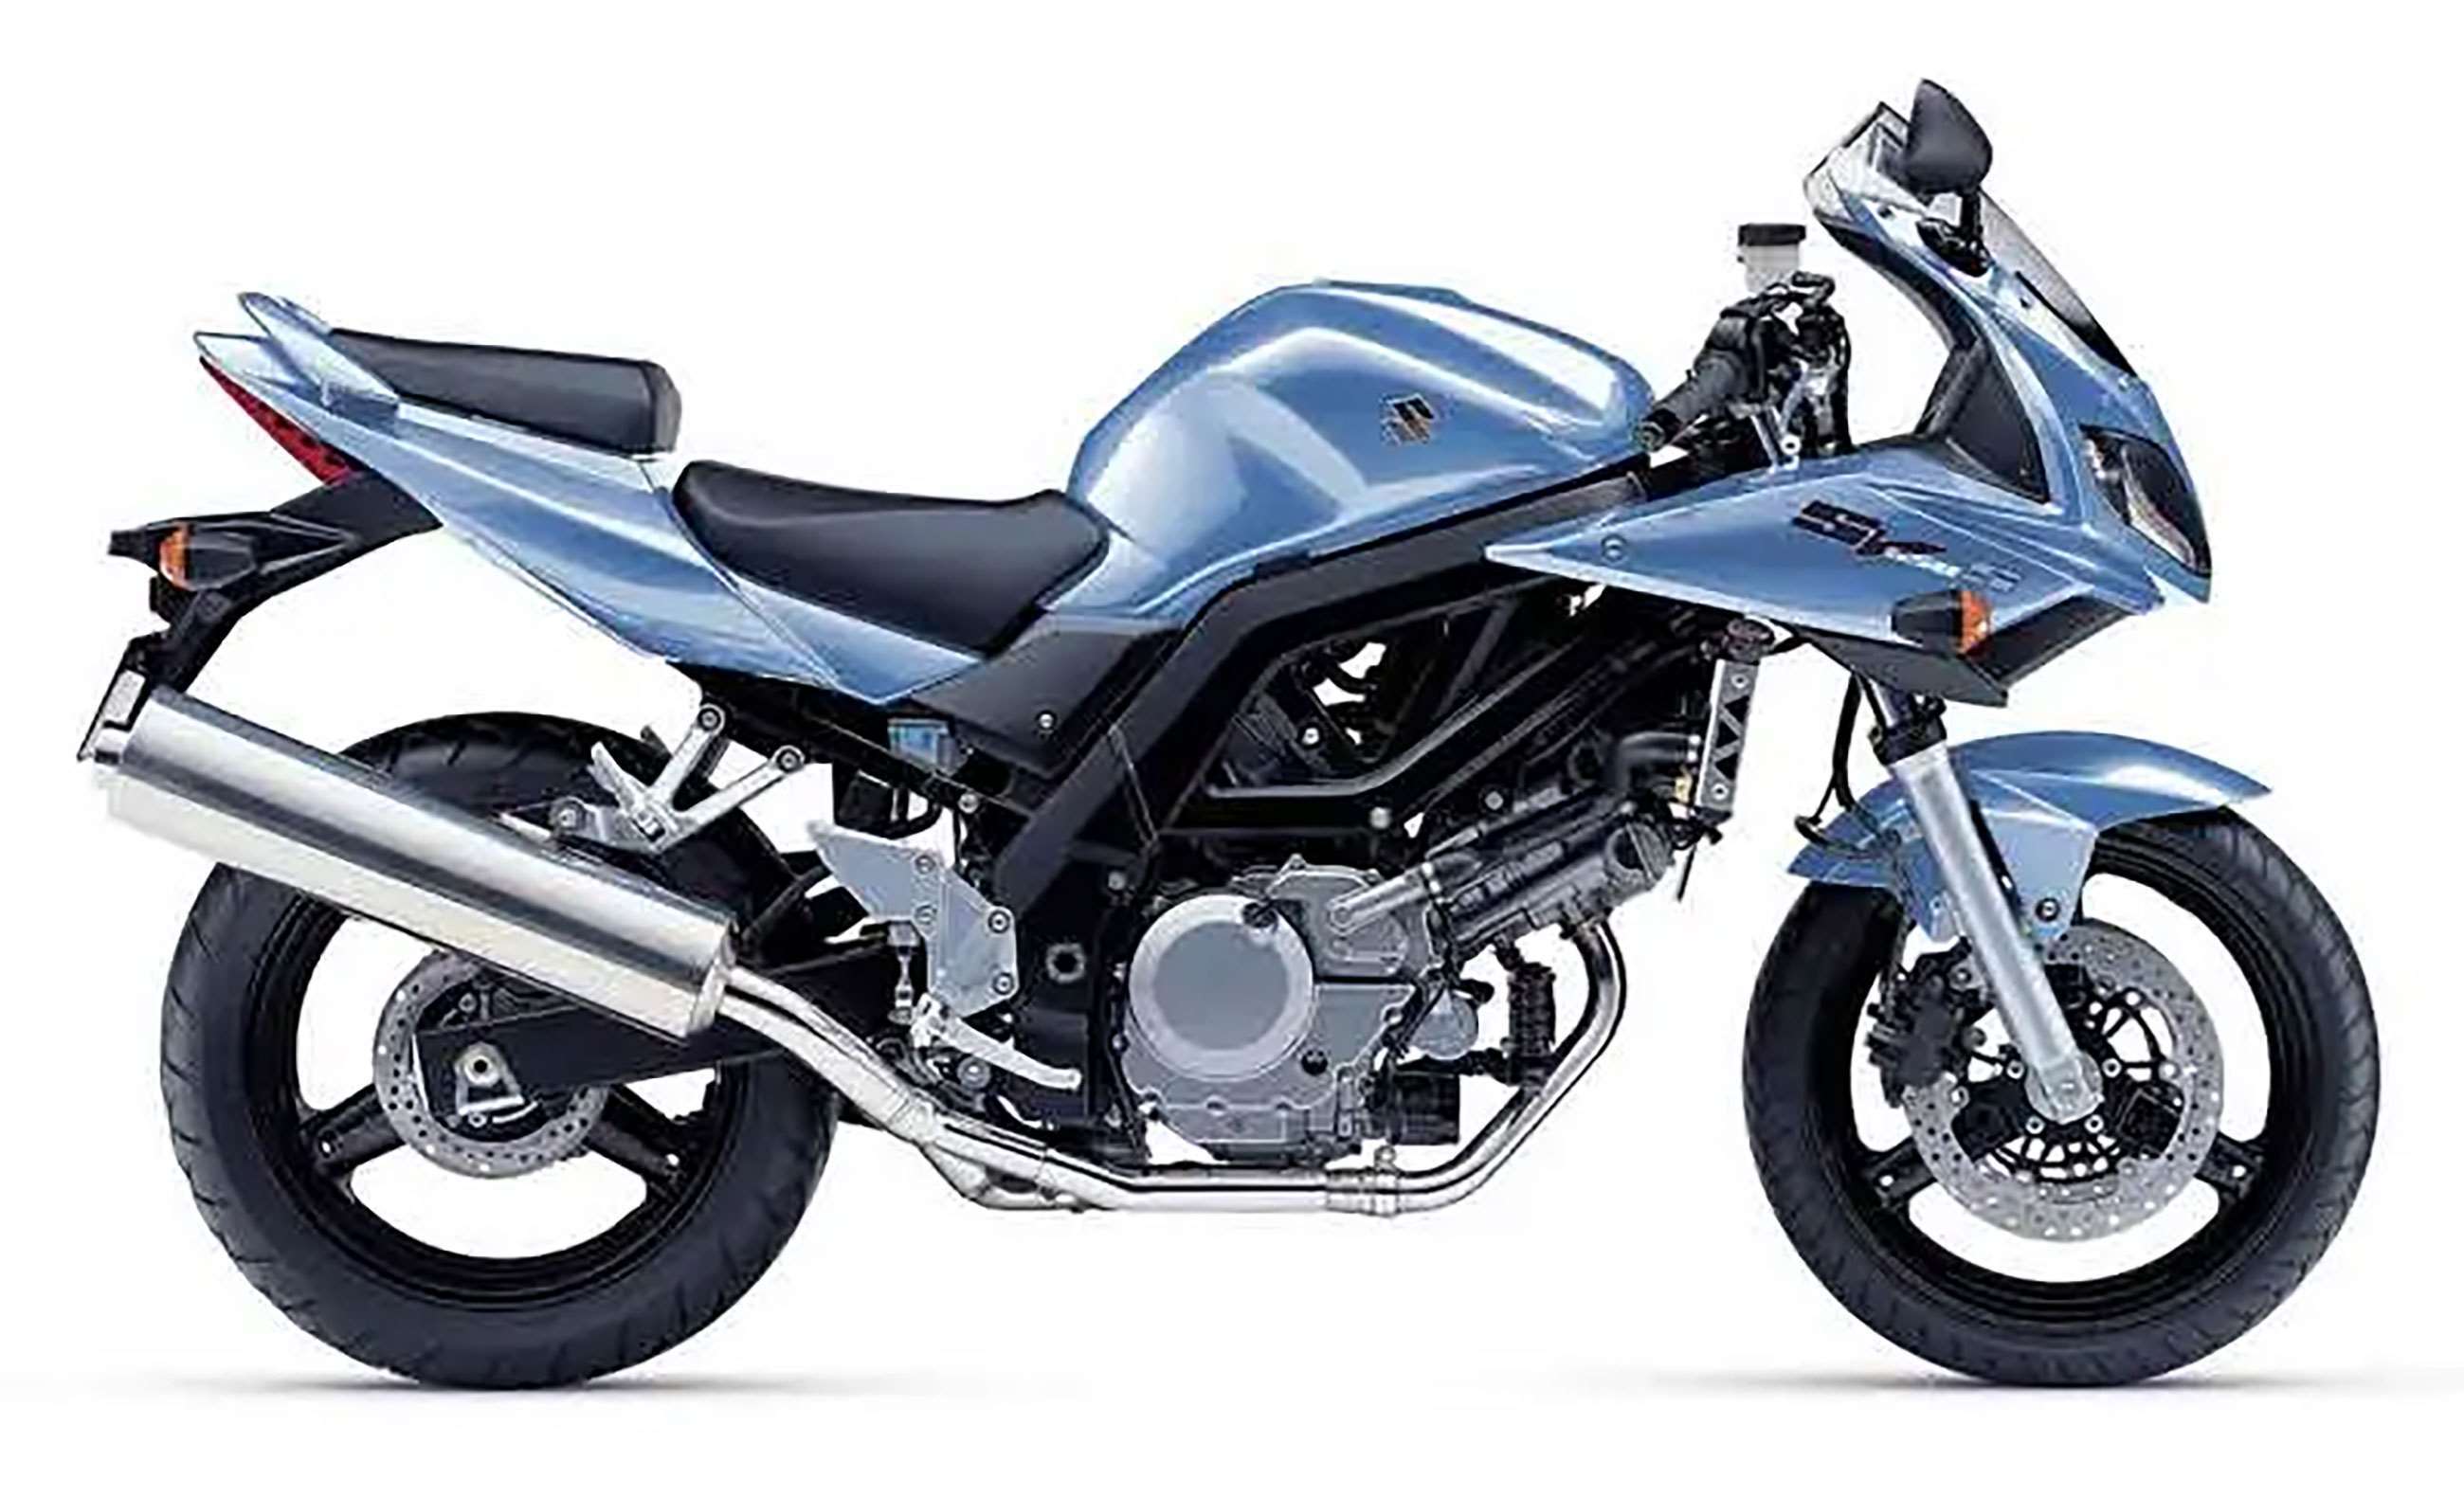 seven-best-motorbikes-of-the-noughties-2-suzuki-sv650-goodwood-28042020.jpg